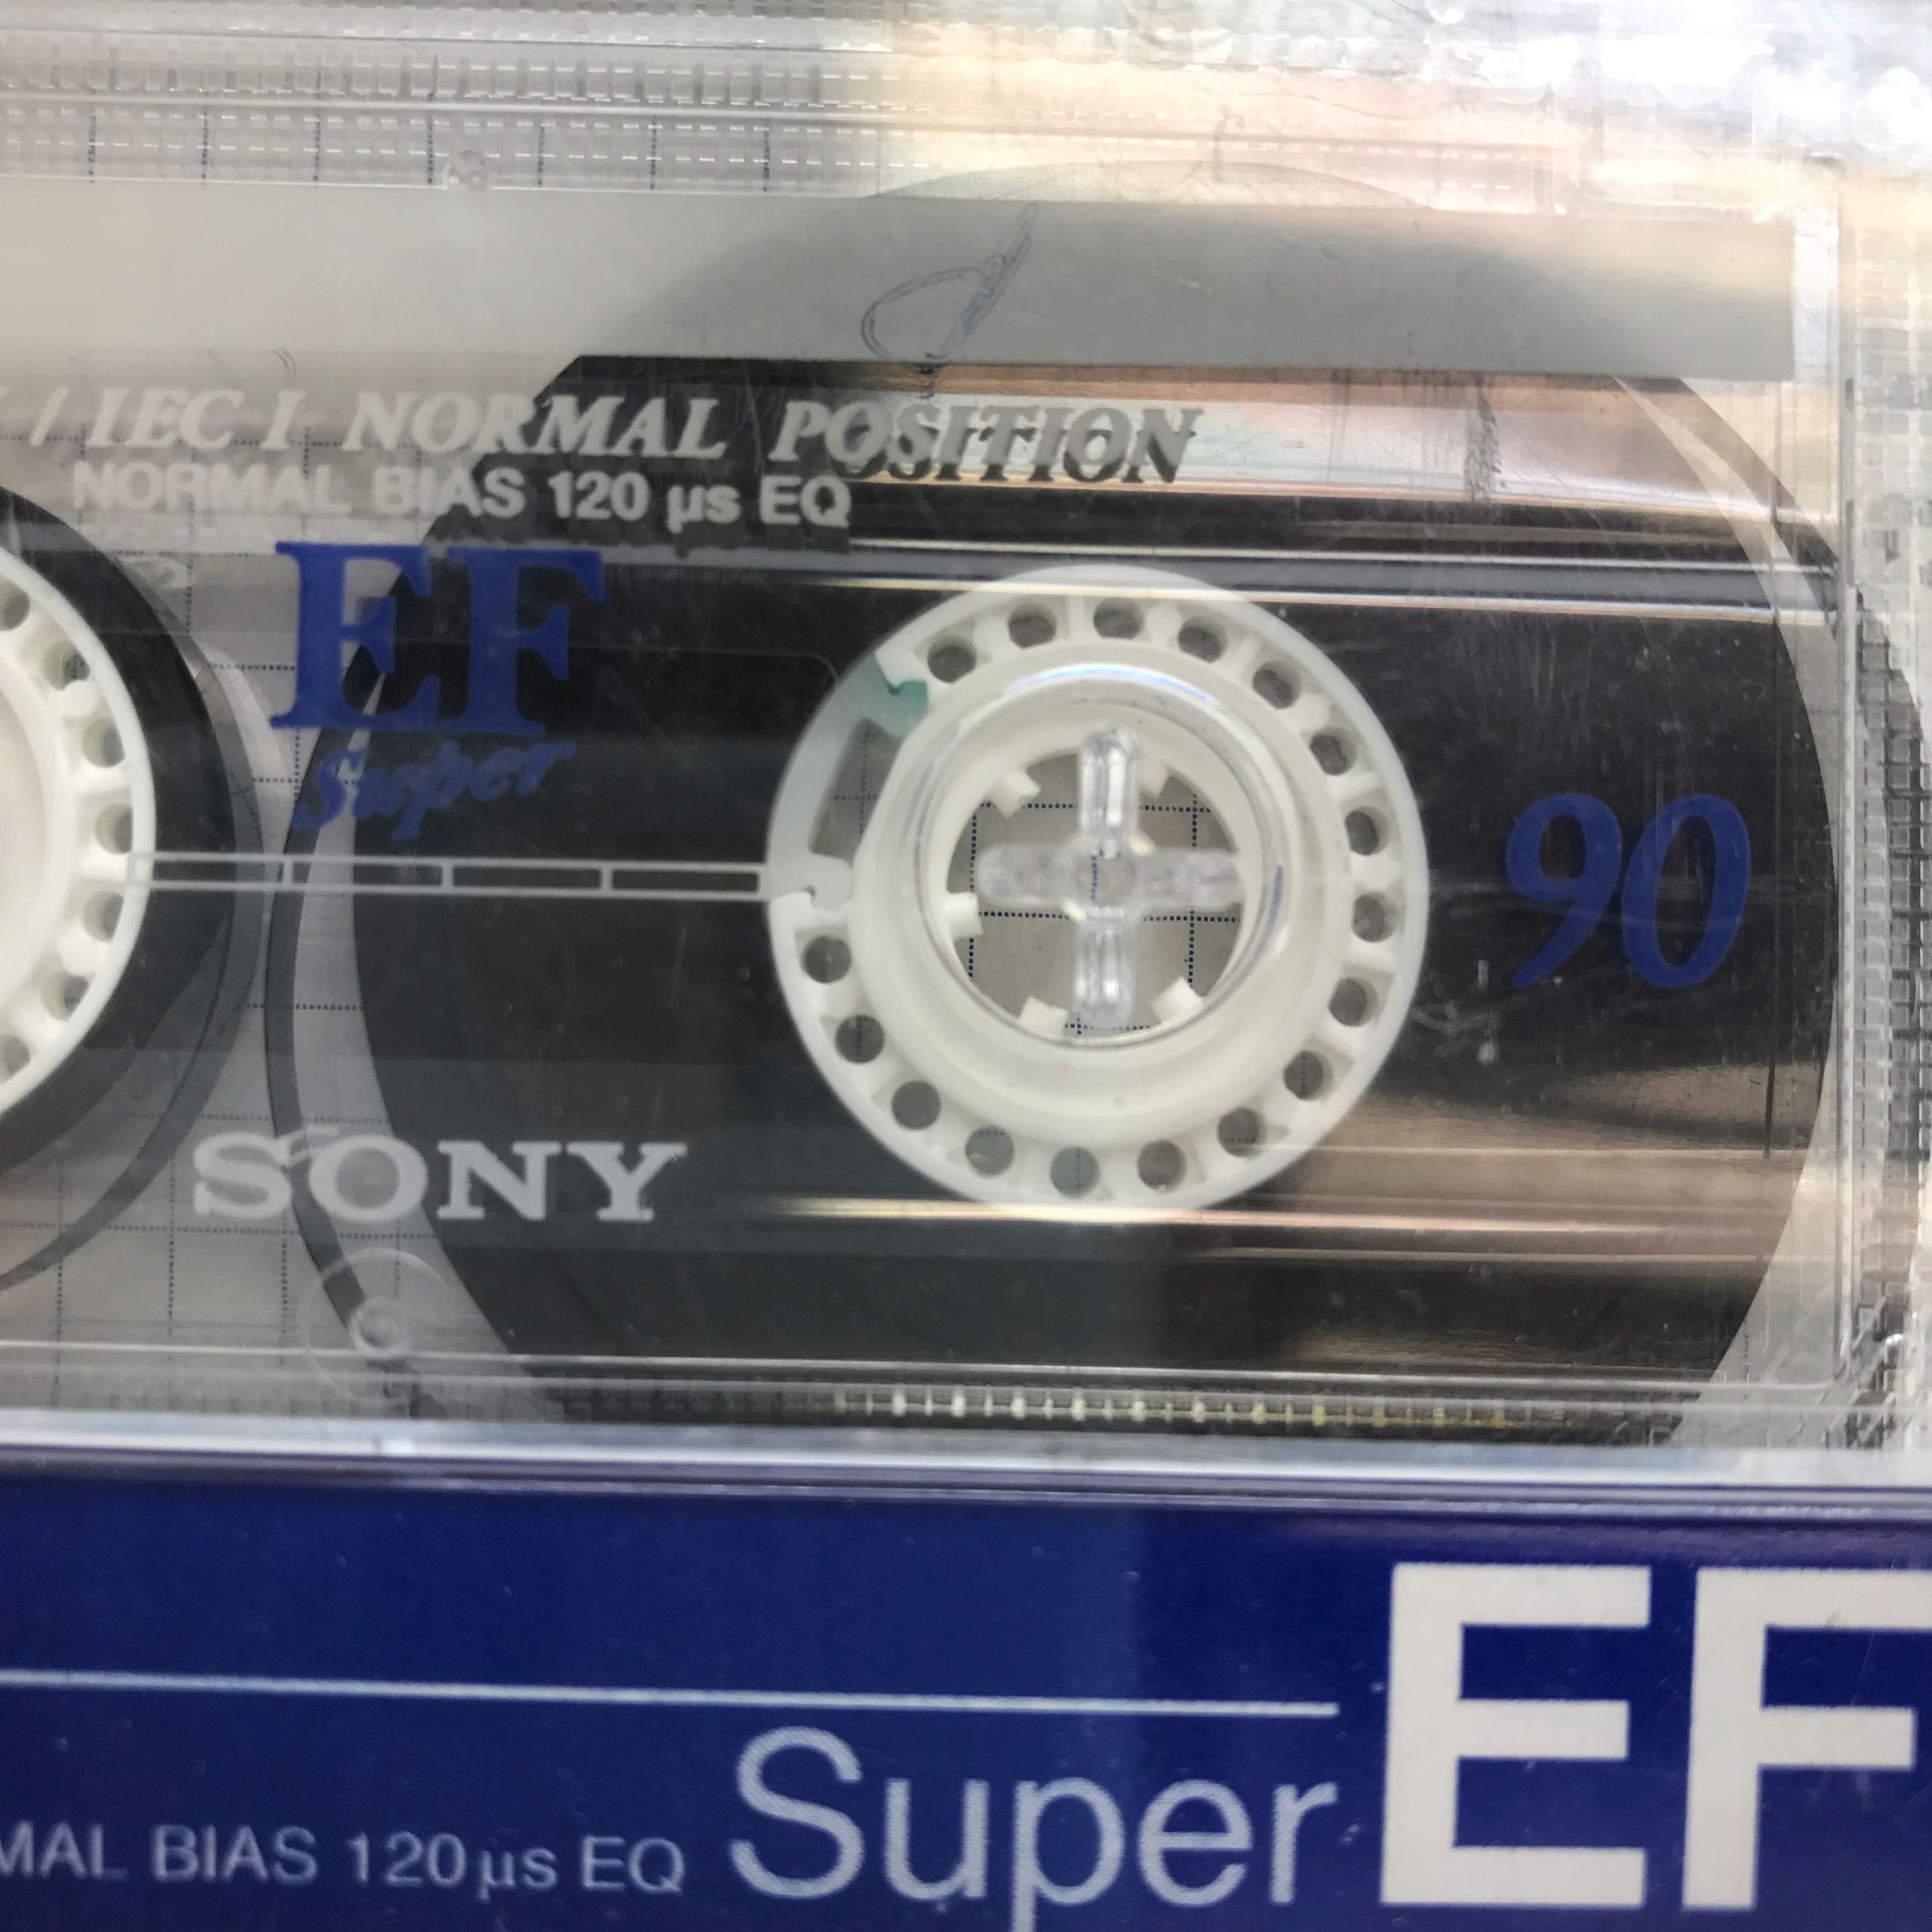 Kaseta - Kaseta magnetofonowa Sony Super Ef 90 I